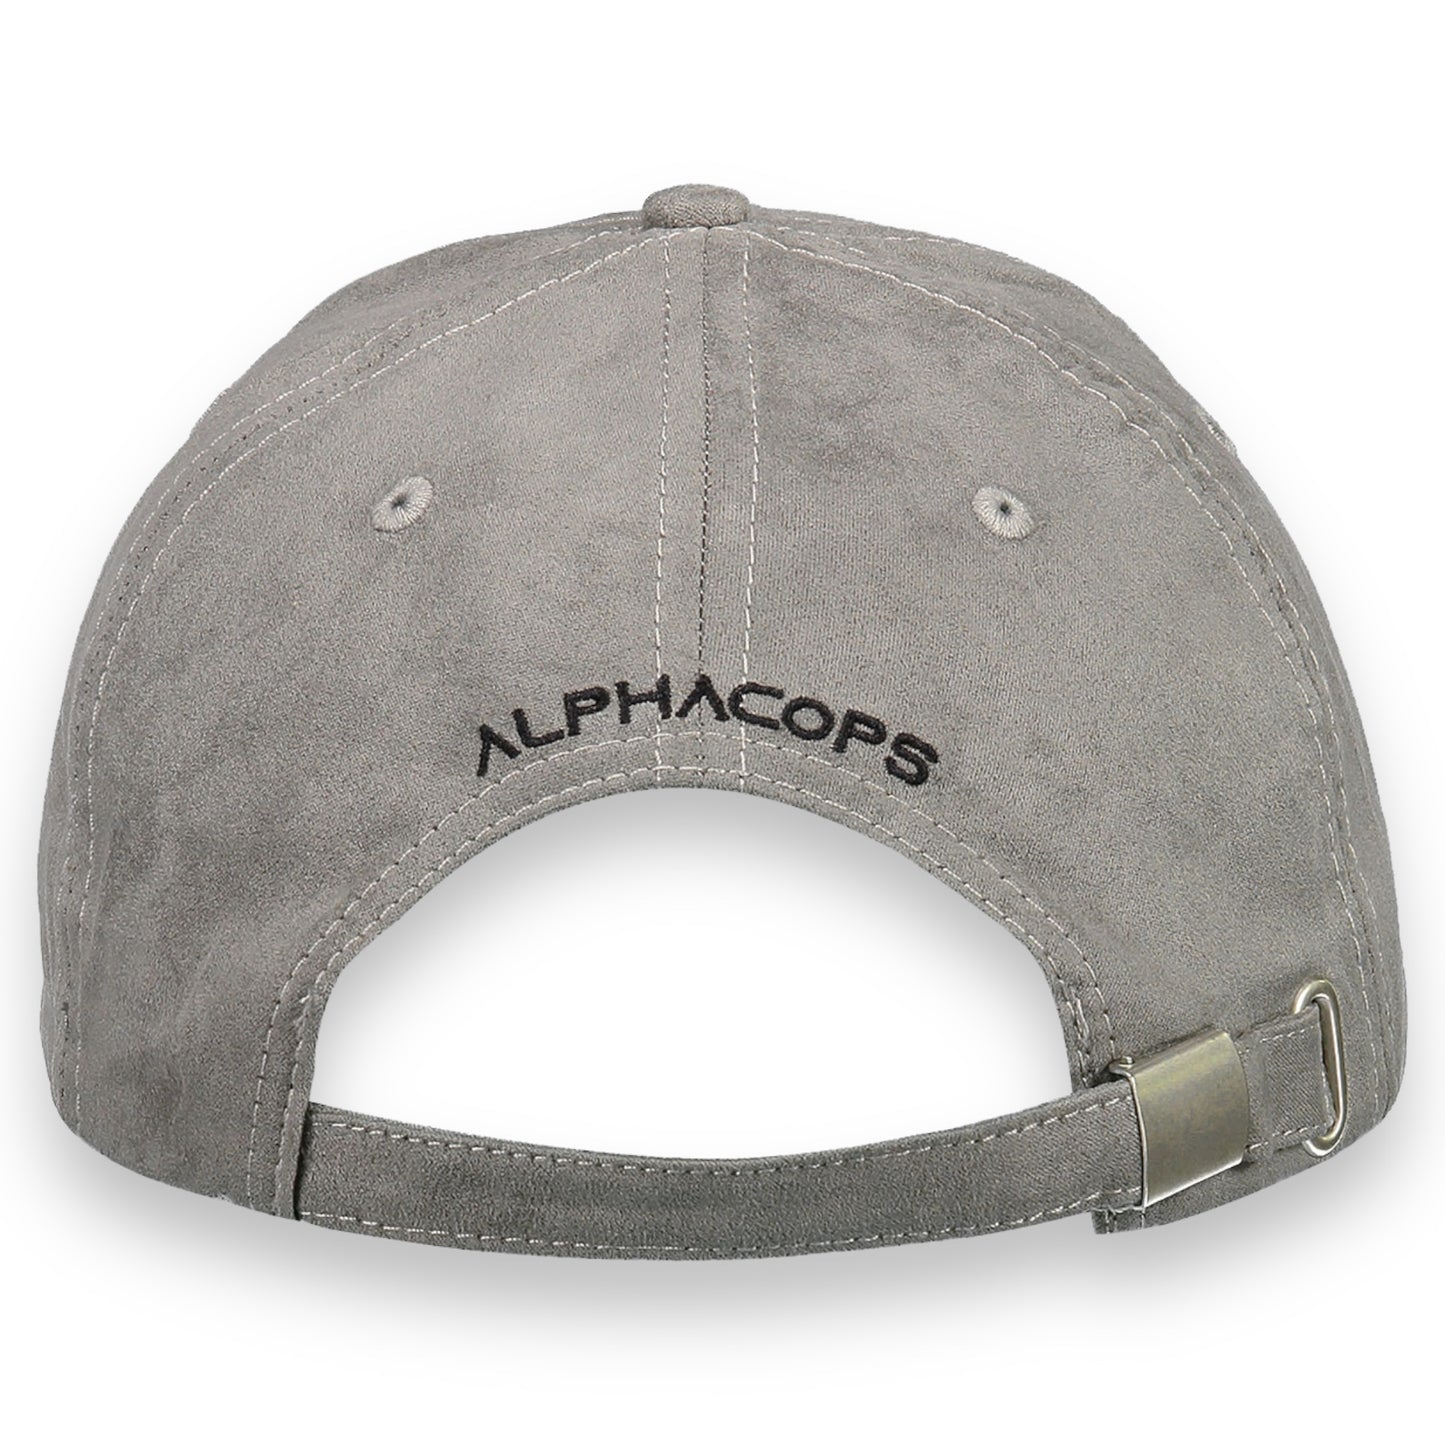 TACTICAL ALCANTARA HAT - Alphacops